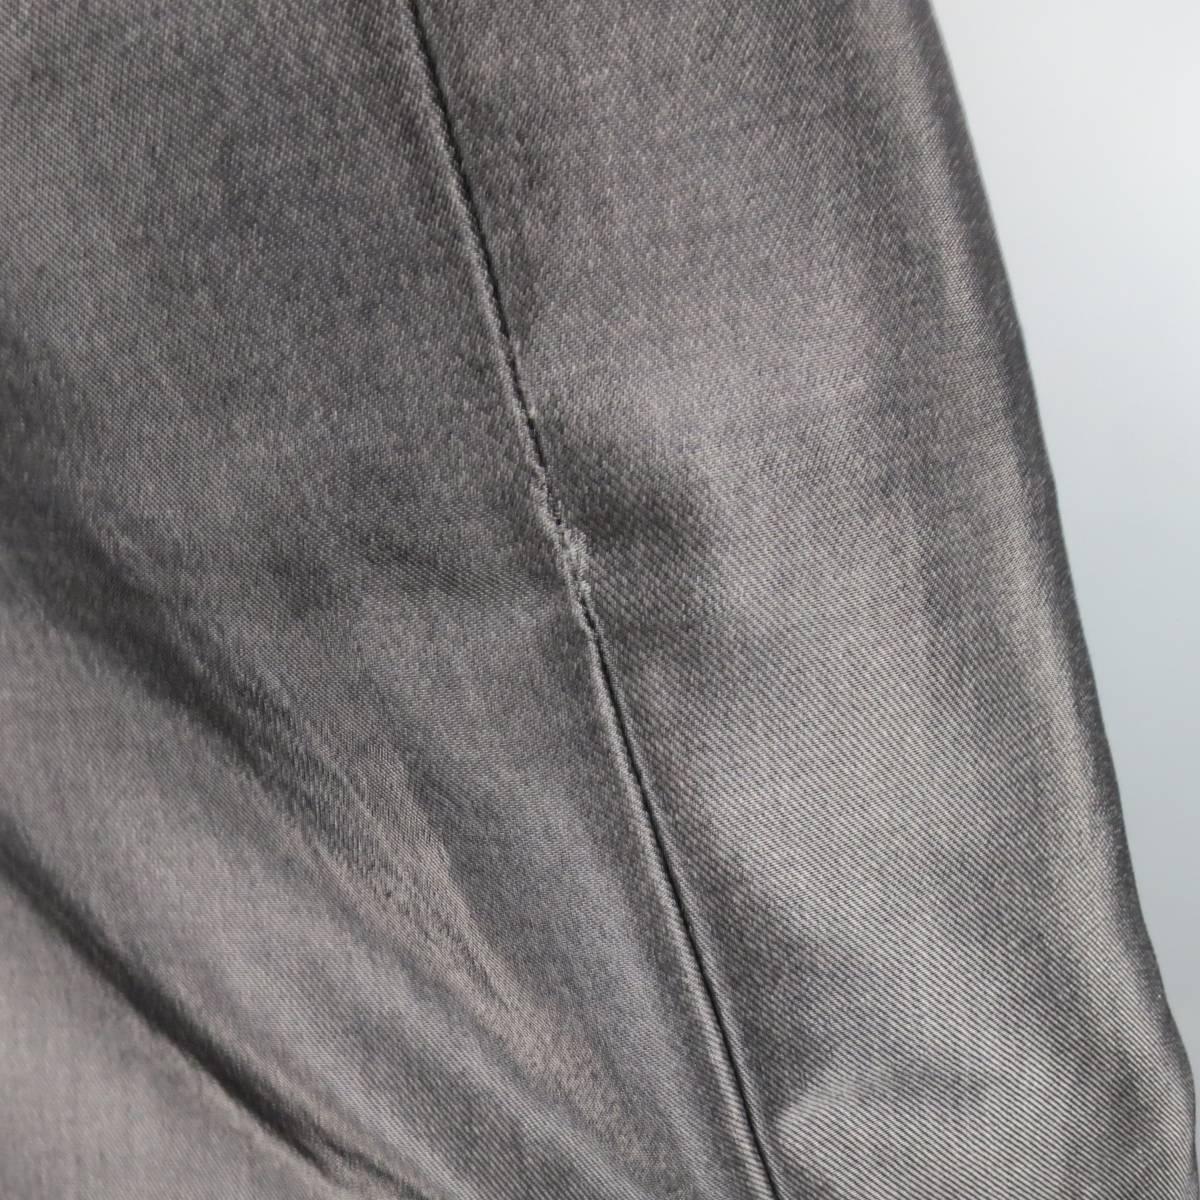 Gray RALPH LAUREN COLLECTION Pencil Skirt Size 4 Metallic Grey Wool Blend